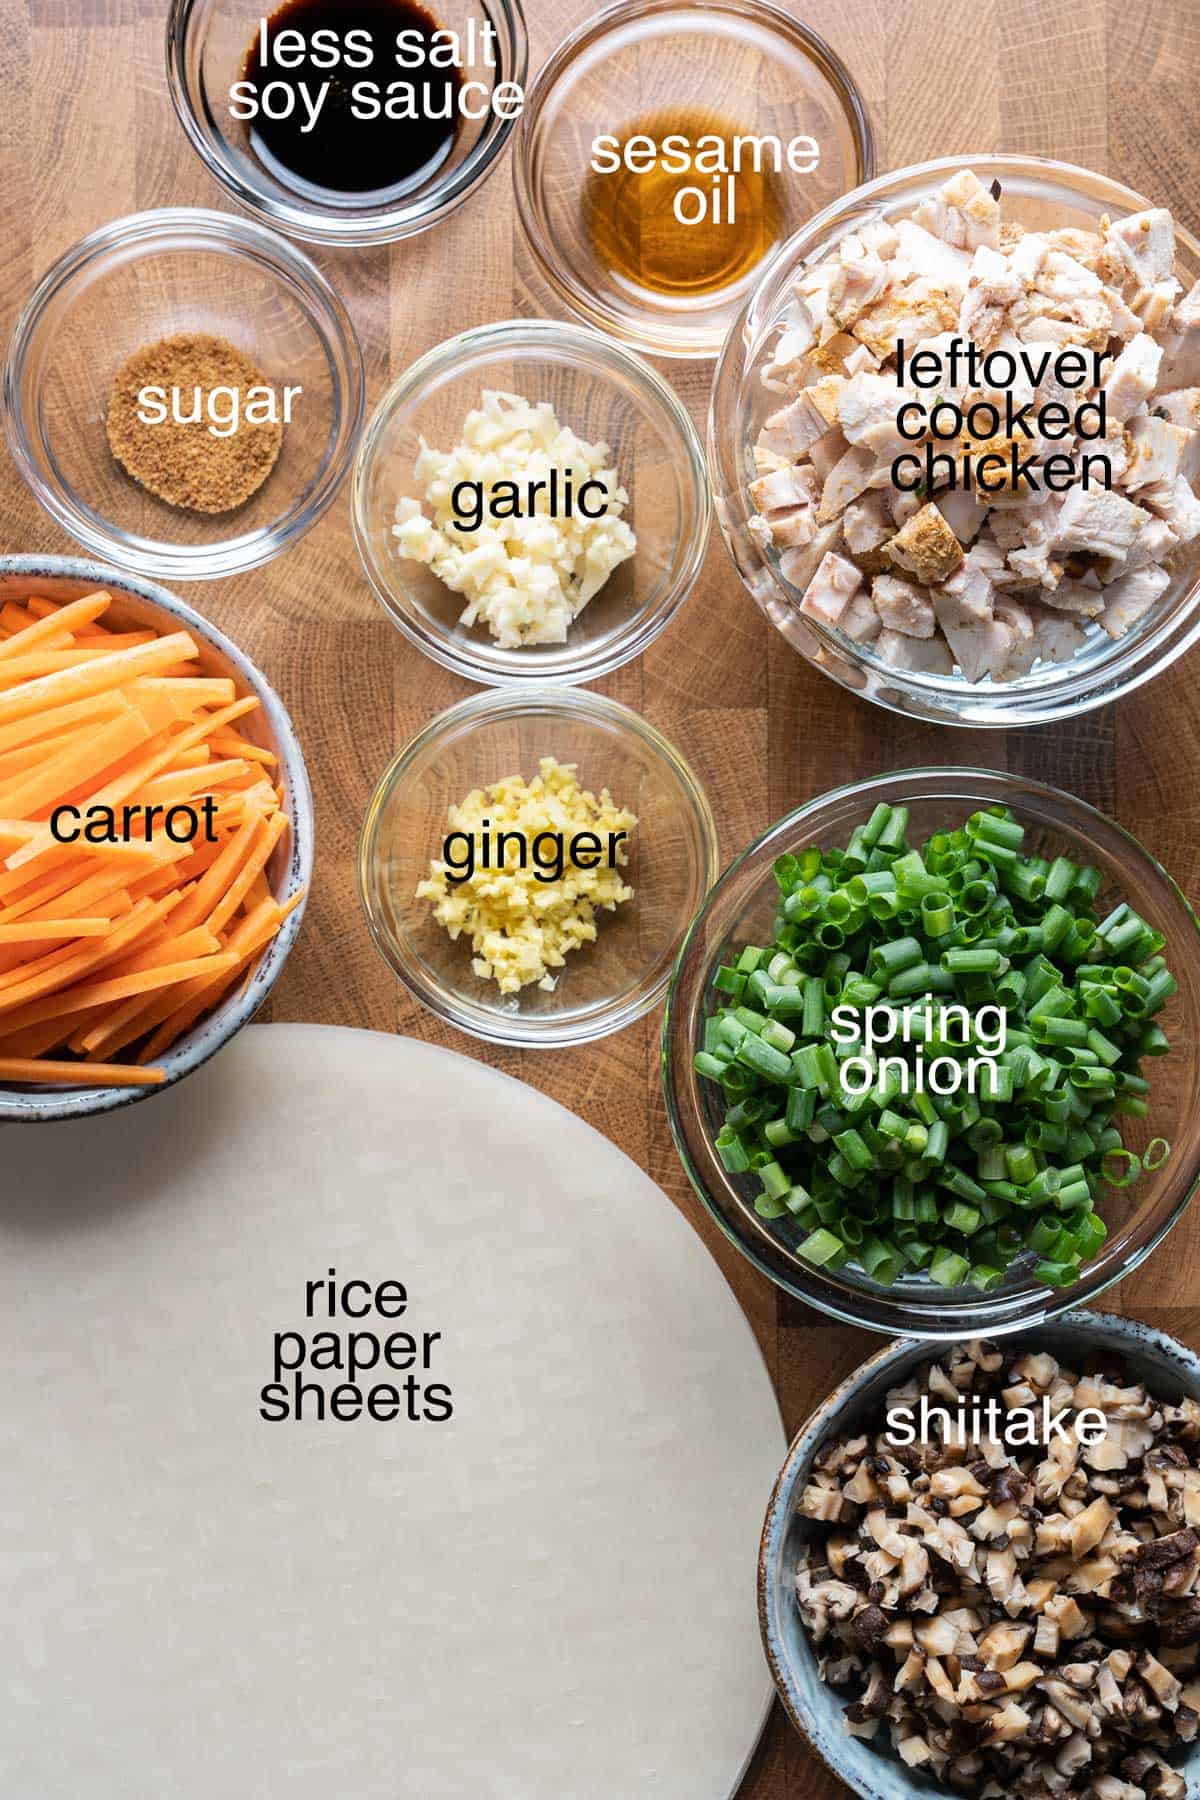 Ingredients to make crispy rice paper dumplings.